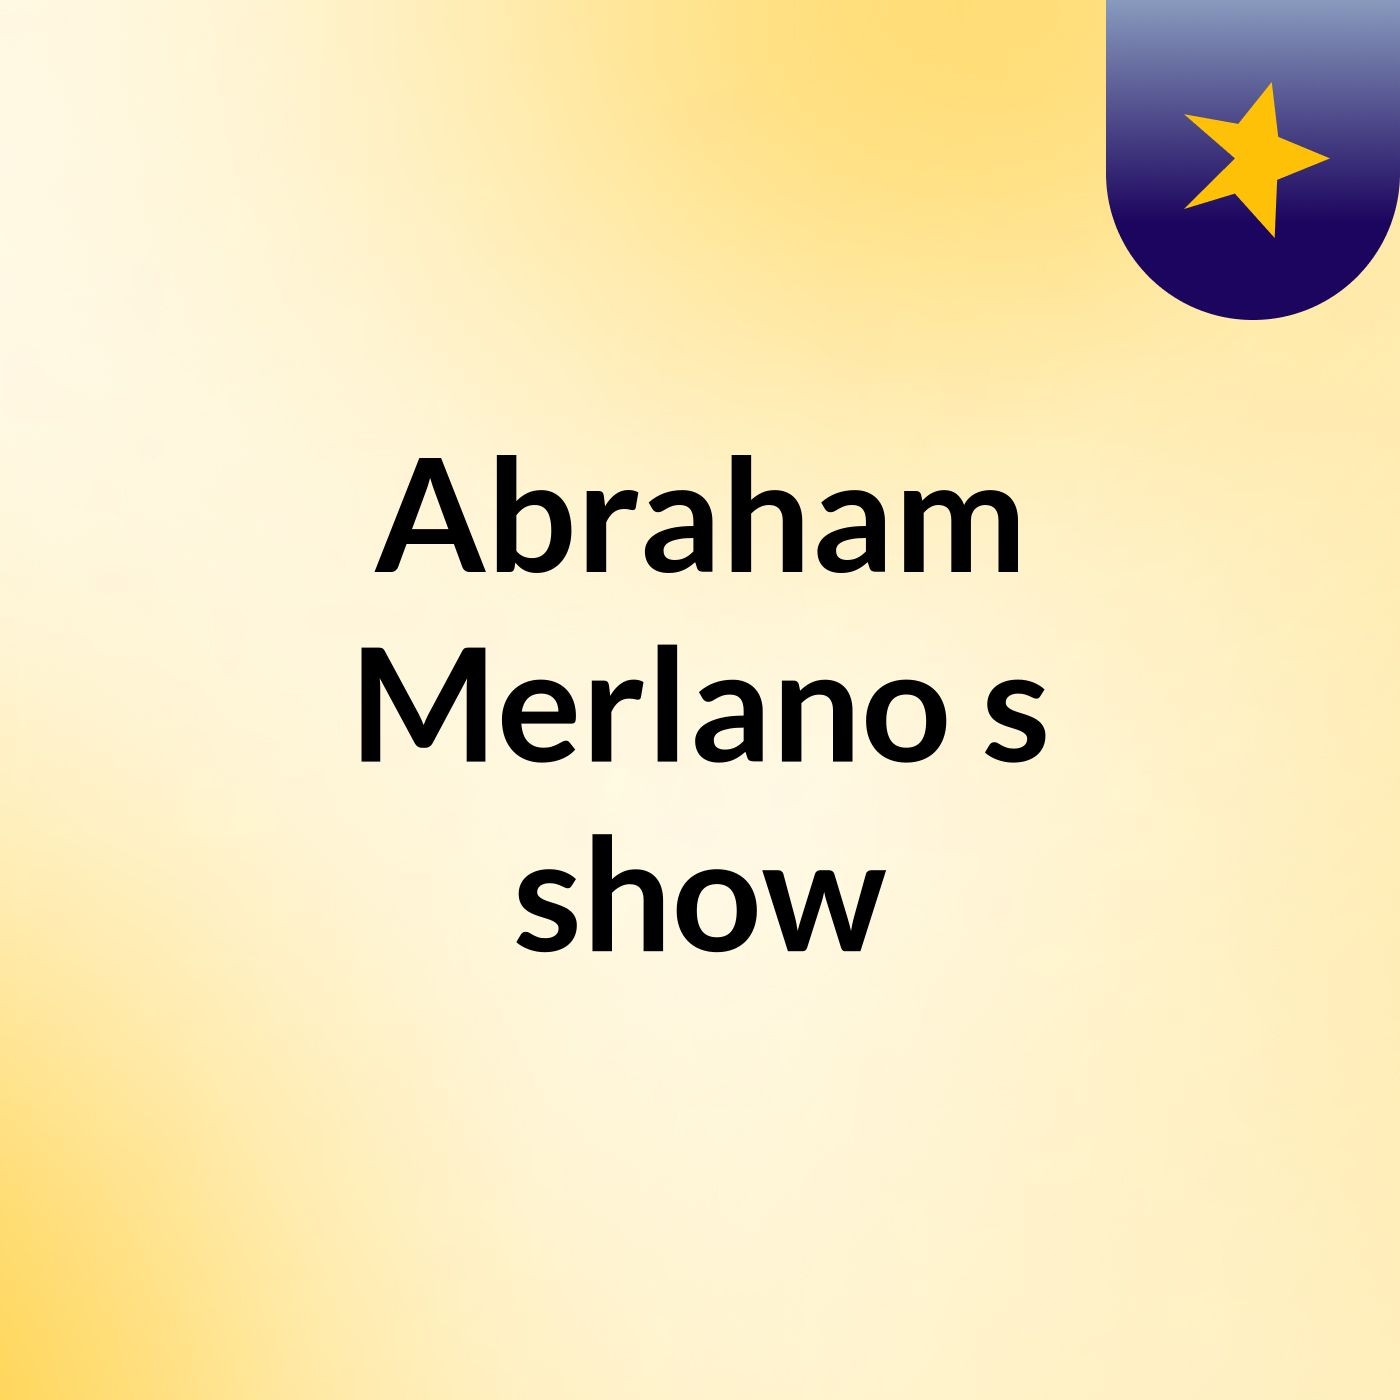 Abraham Merlano's show